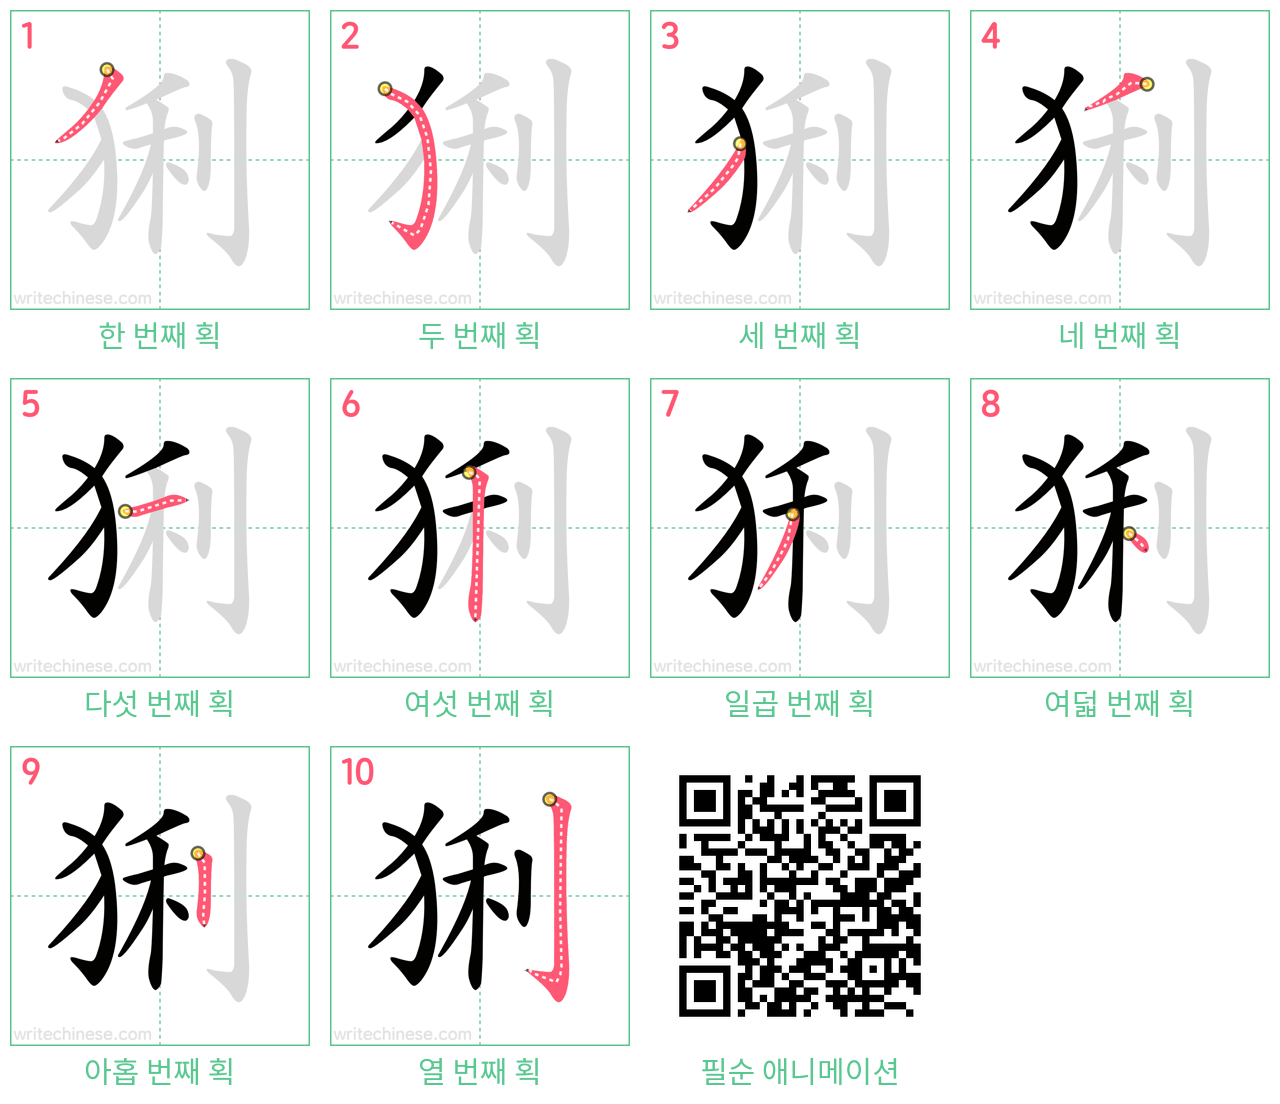 猁 step-by-step stroke order diagrams